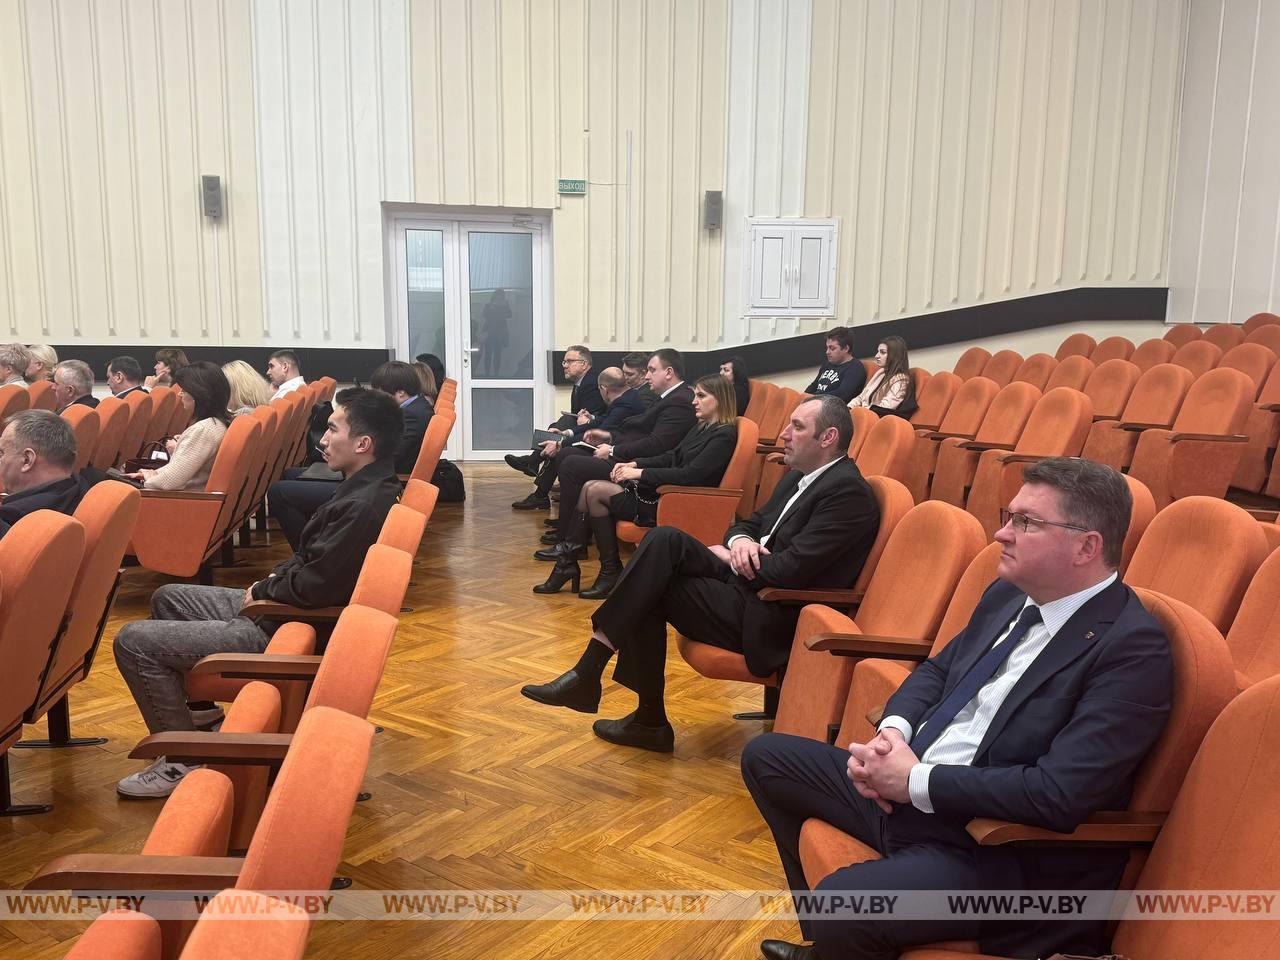 В Пинске зарегистрировано 60 кандидатов в депутаты городского Совета депутатов двадцать девятого созыва